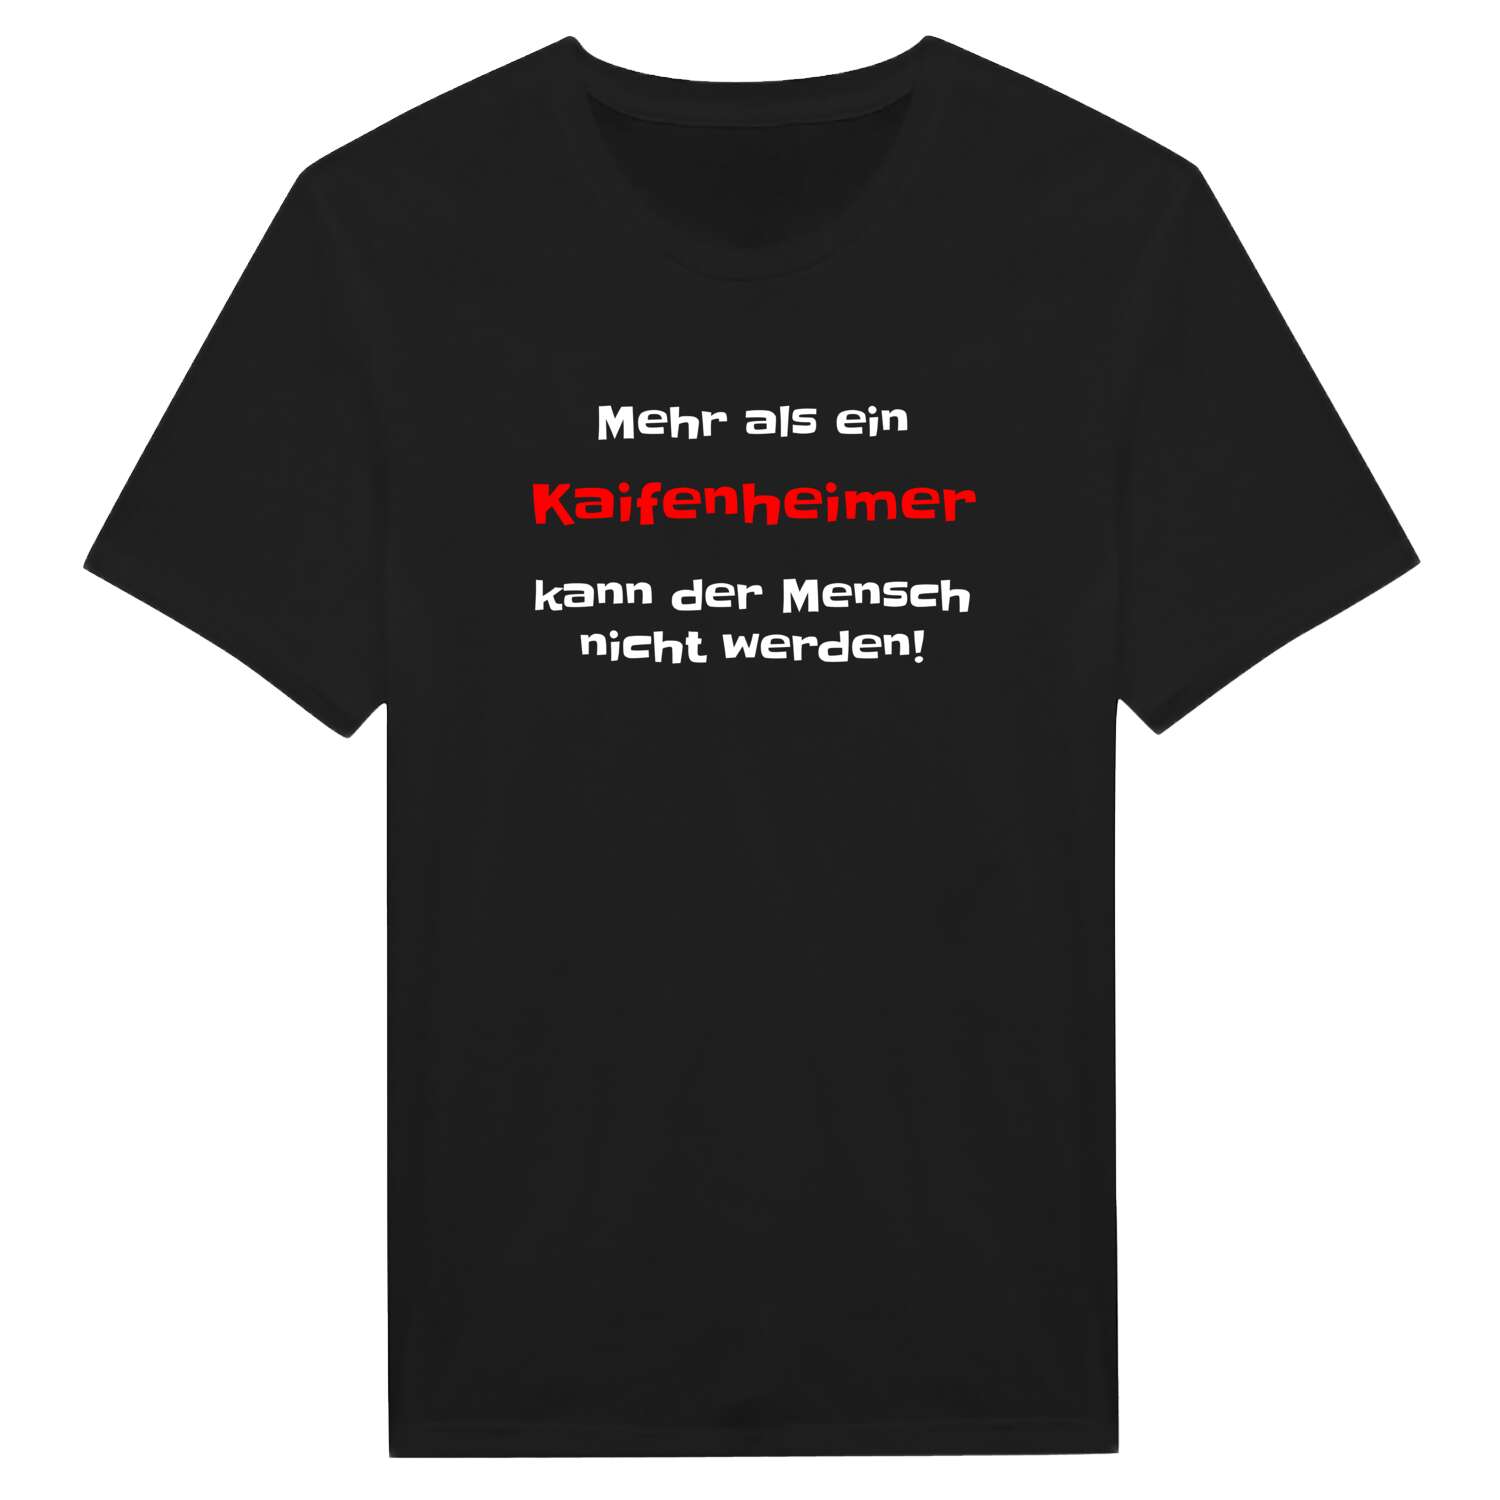 Kaifenheim T-Shirt »Mehr als ein«